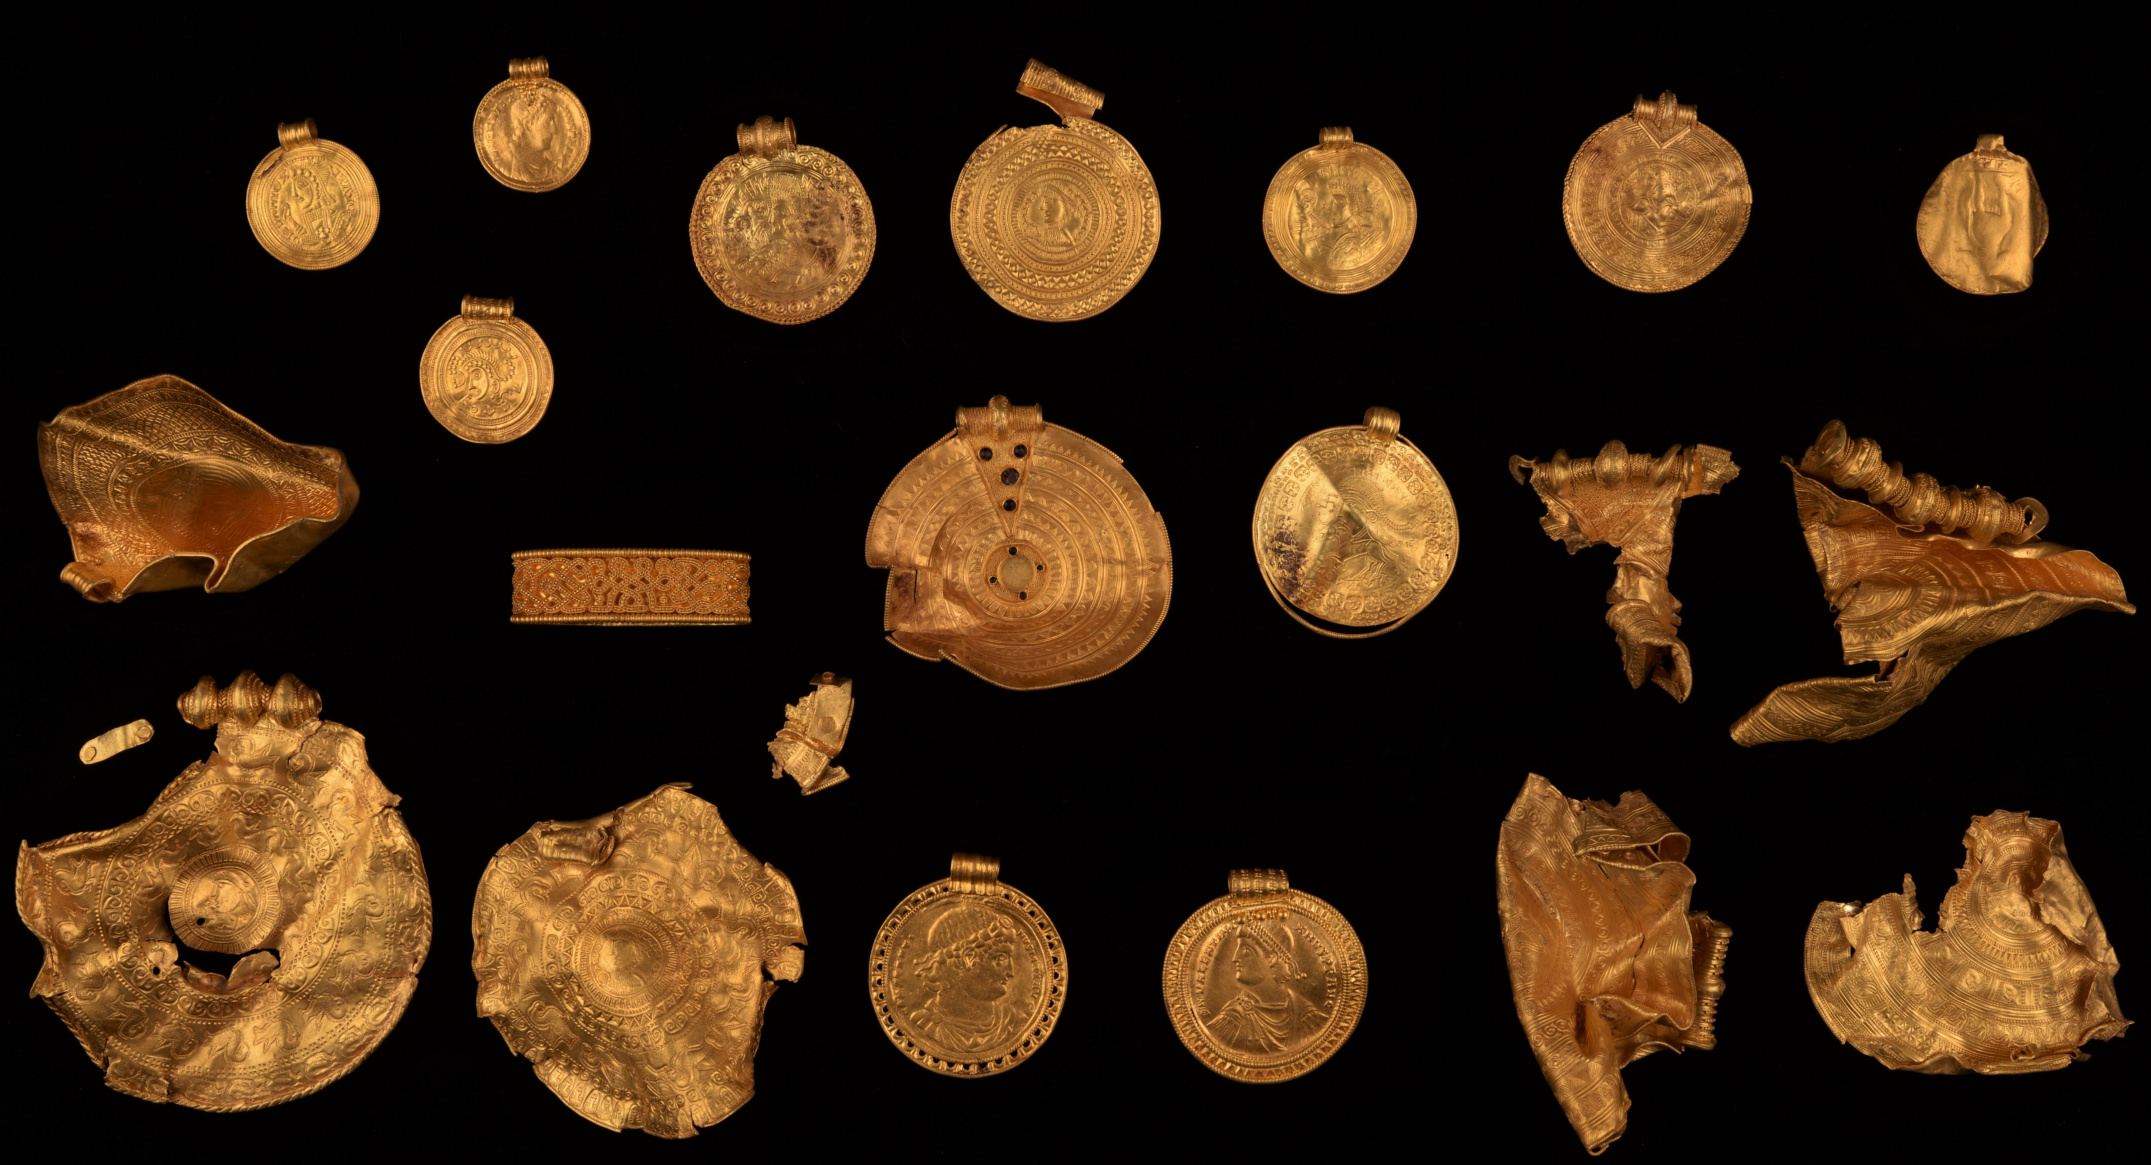 Le bractéate faisait partie d'un trésor d'objets en or enterrés de Vindelev, certains d'entre eux datant du Ve siècle après JC, qui a été découvert dans l'est de la région du Jutland au Danemark en 2021.